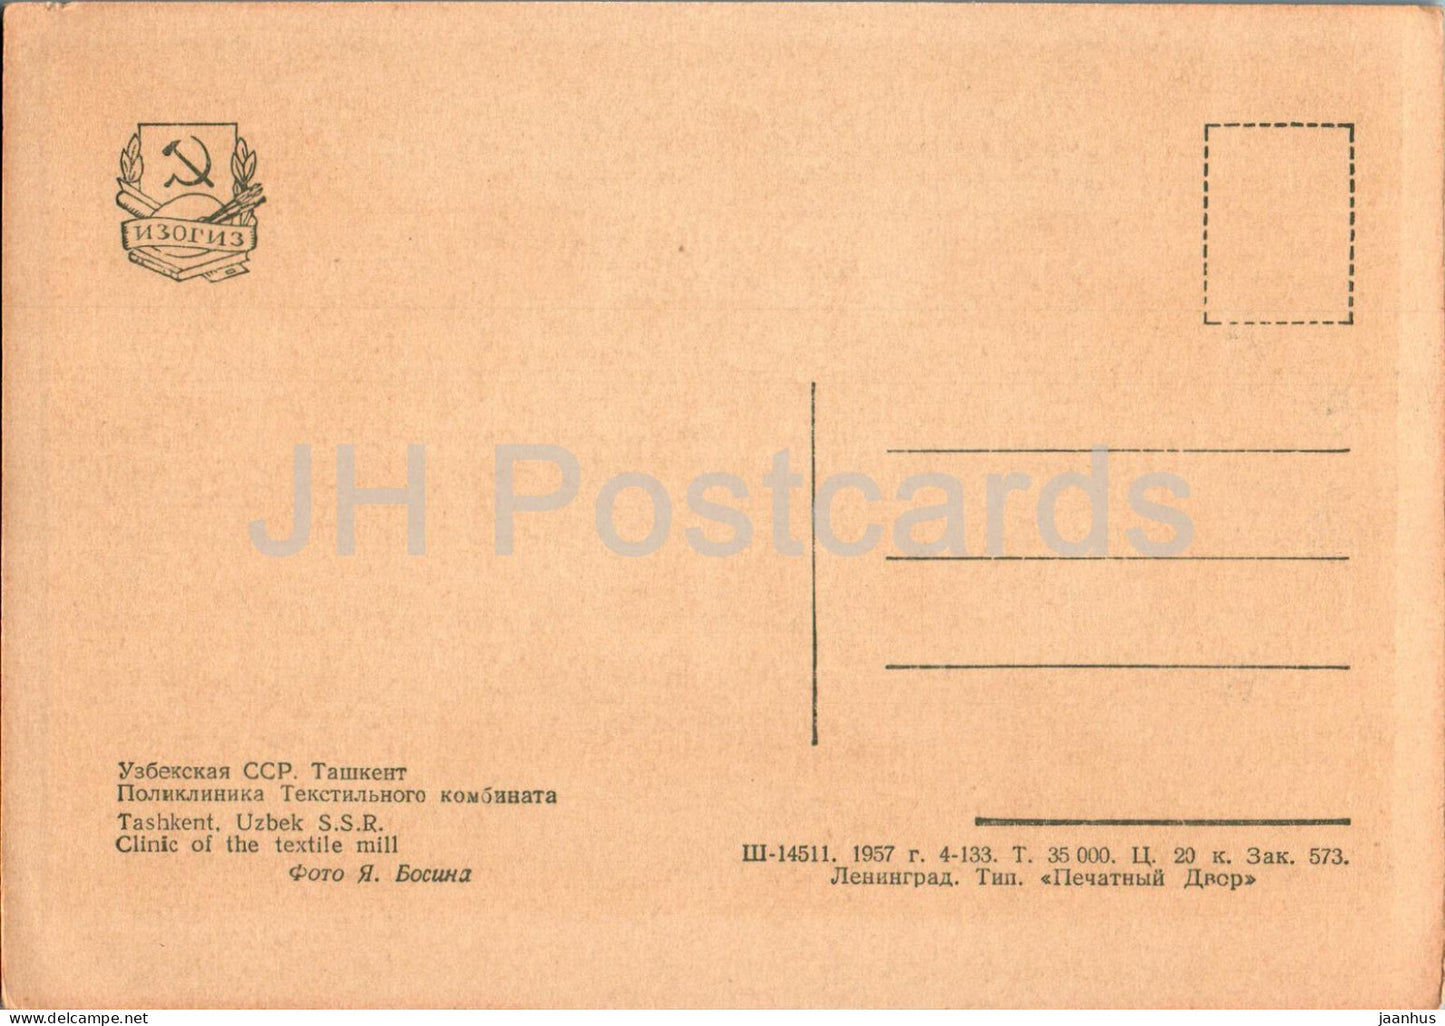 Taschkent – ​​Klinik der Textilfabrik – alte Postkarte – 1957 – Usbekistan UdSSR – unbenutzt 